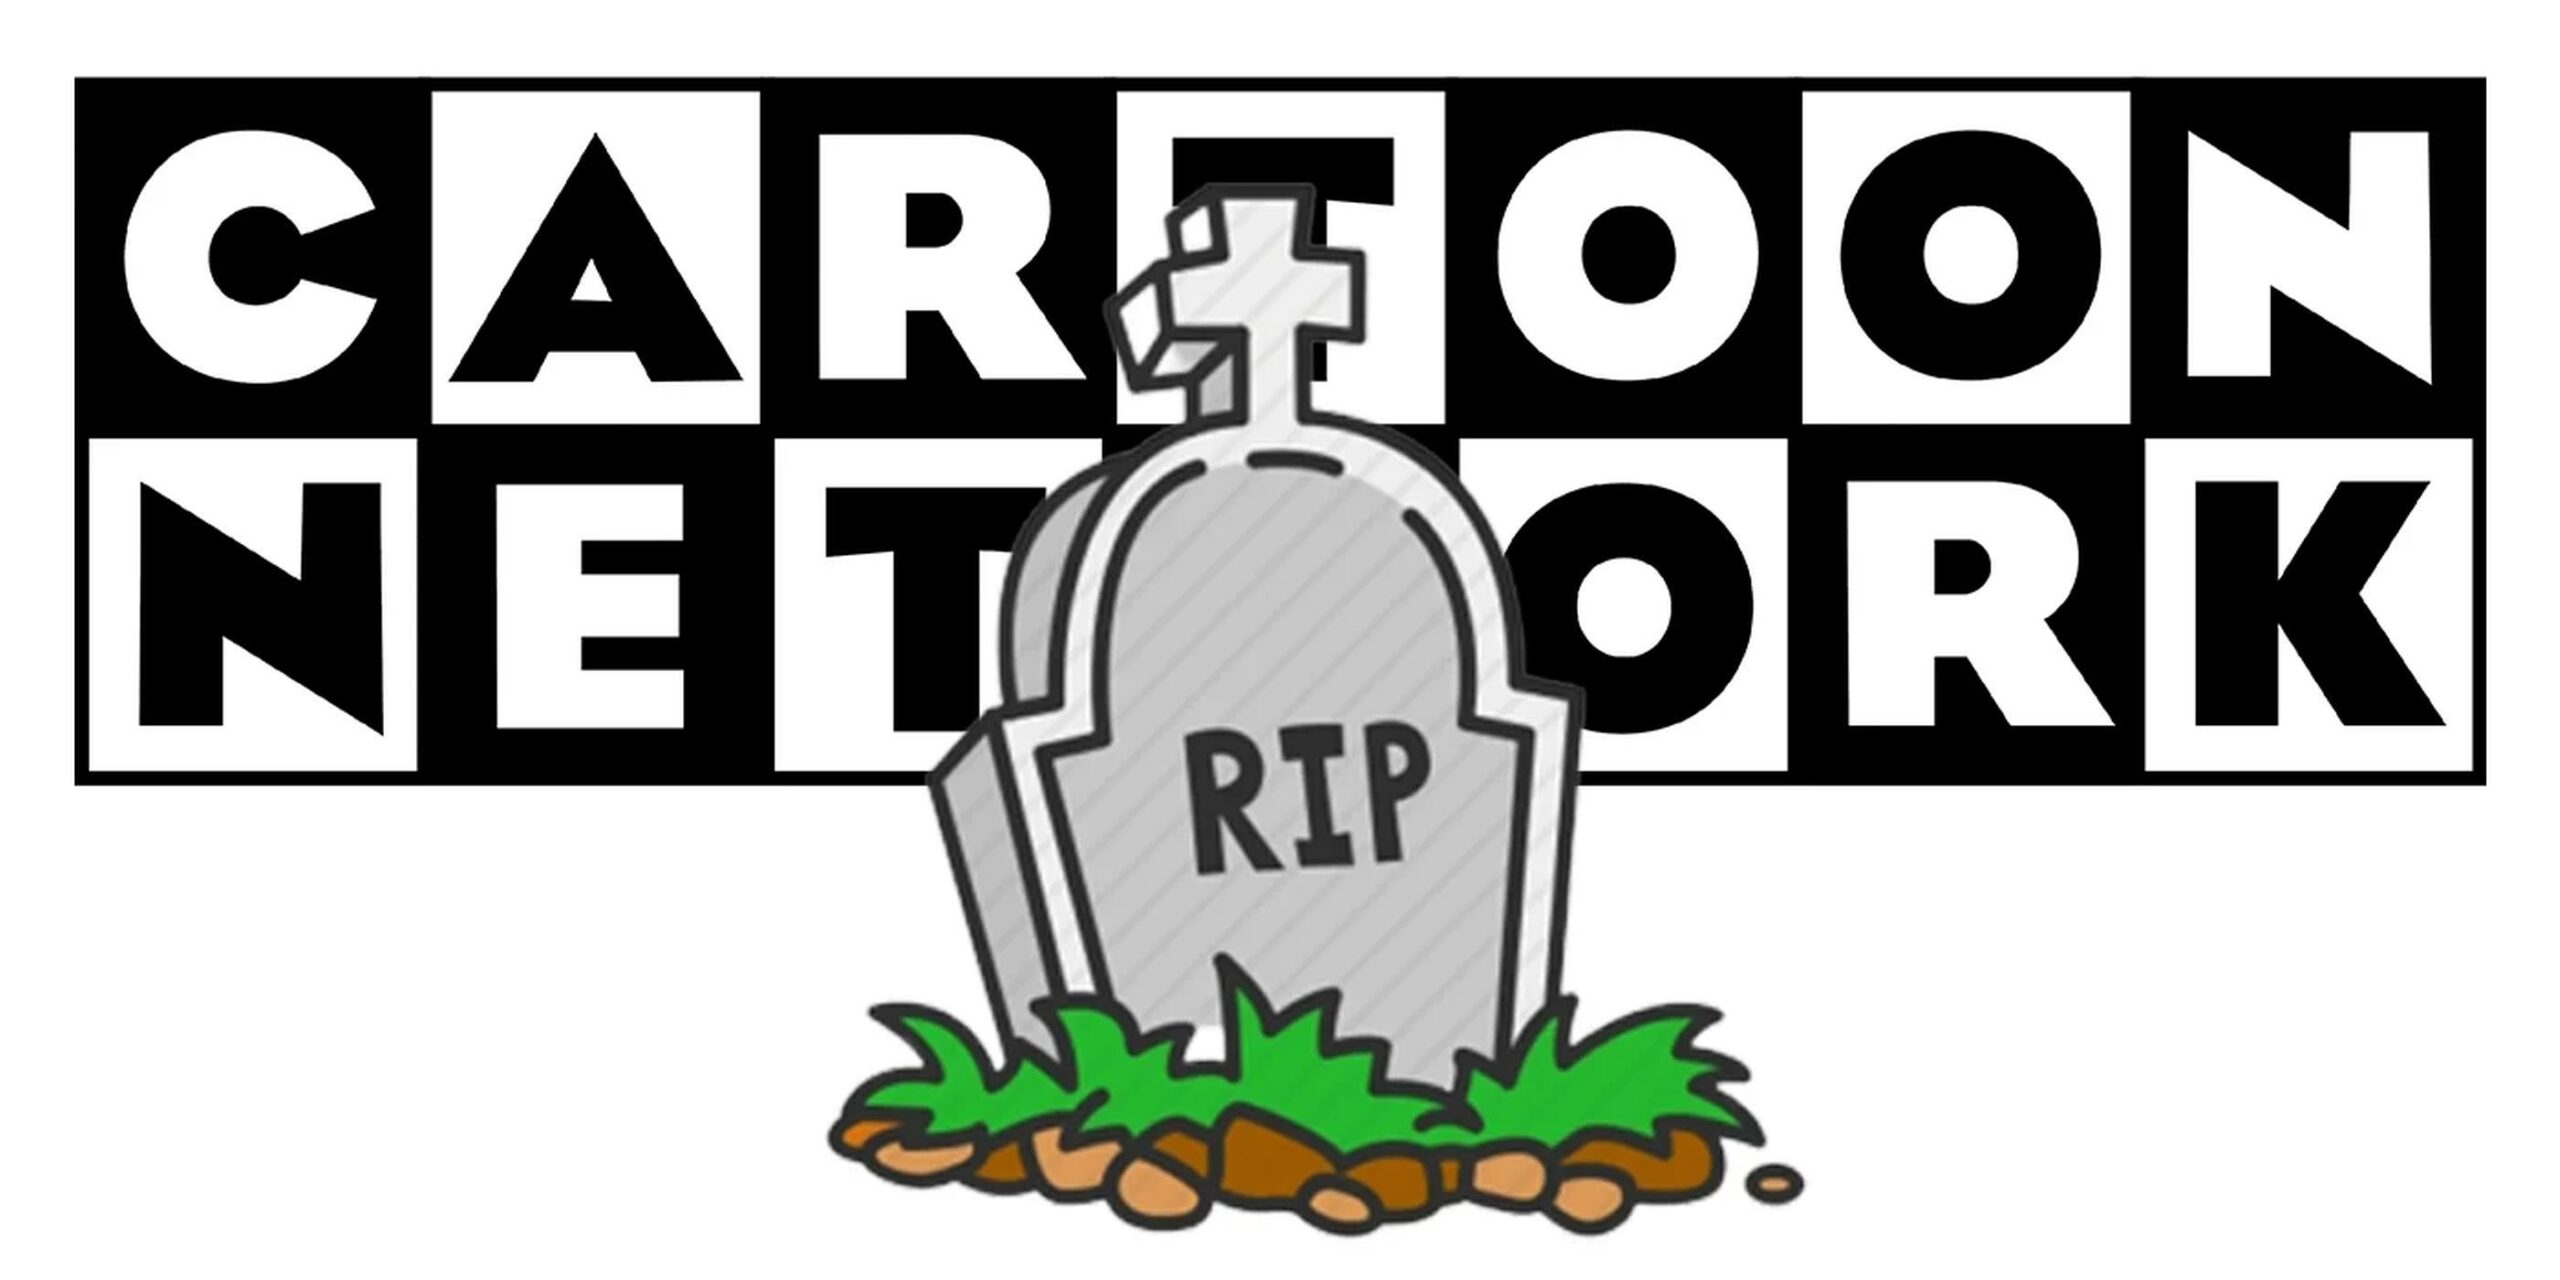 Cartoon Network è morto? No, ma il suo futuro è incerto